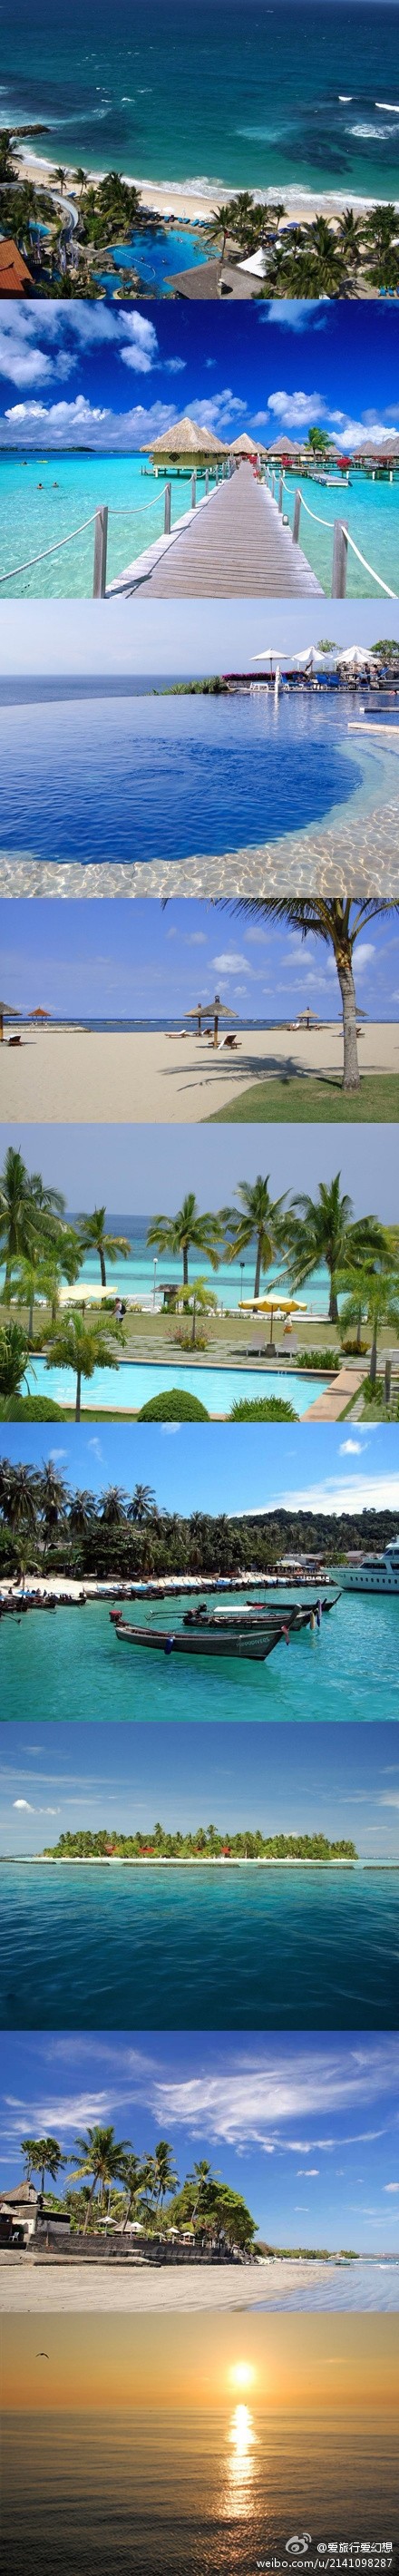 【巴厘岛·库塔海滩】库塔海滩(kuta beach)号称巴厘岛